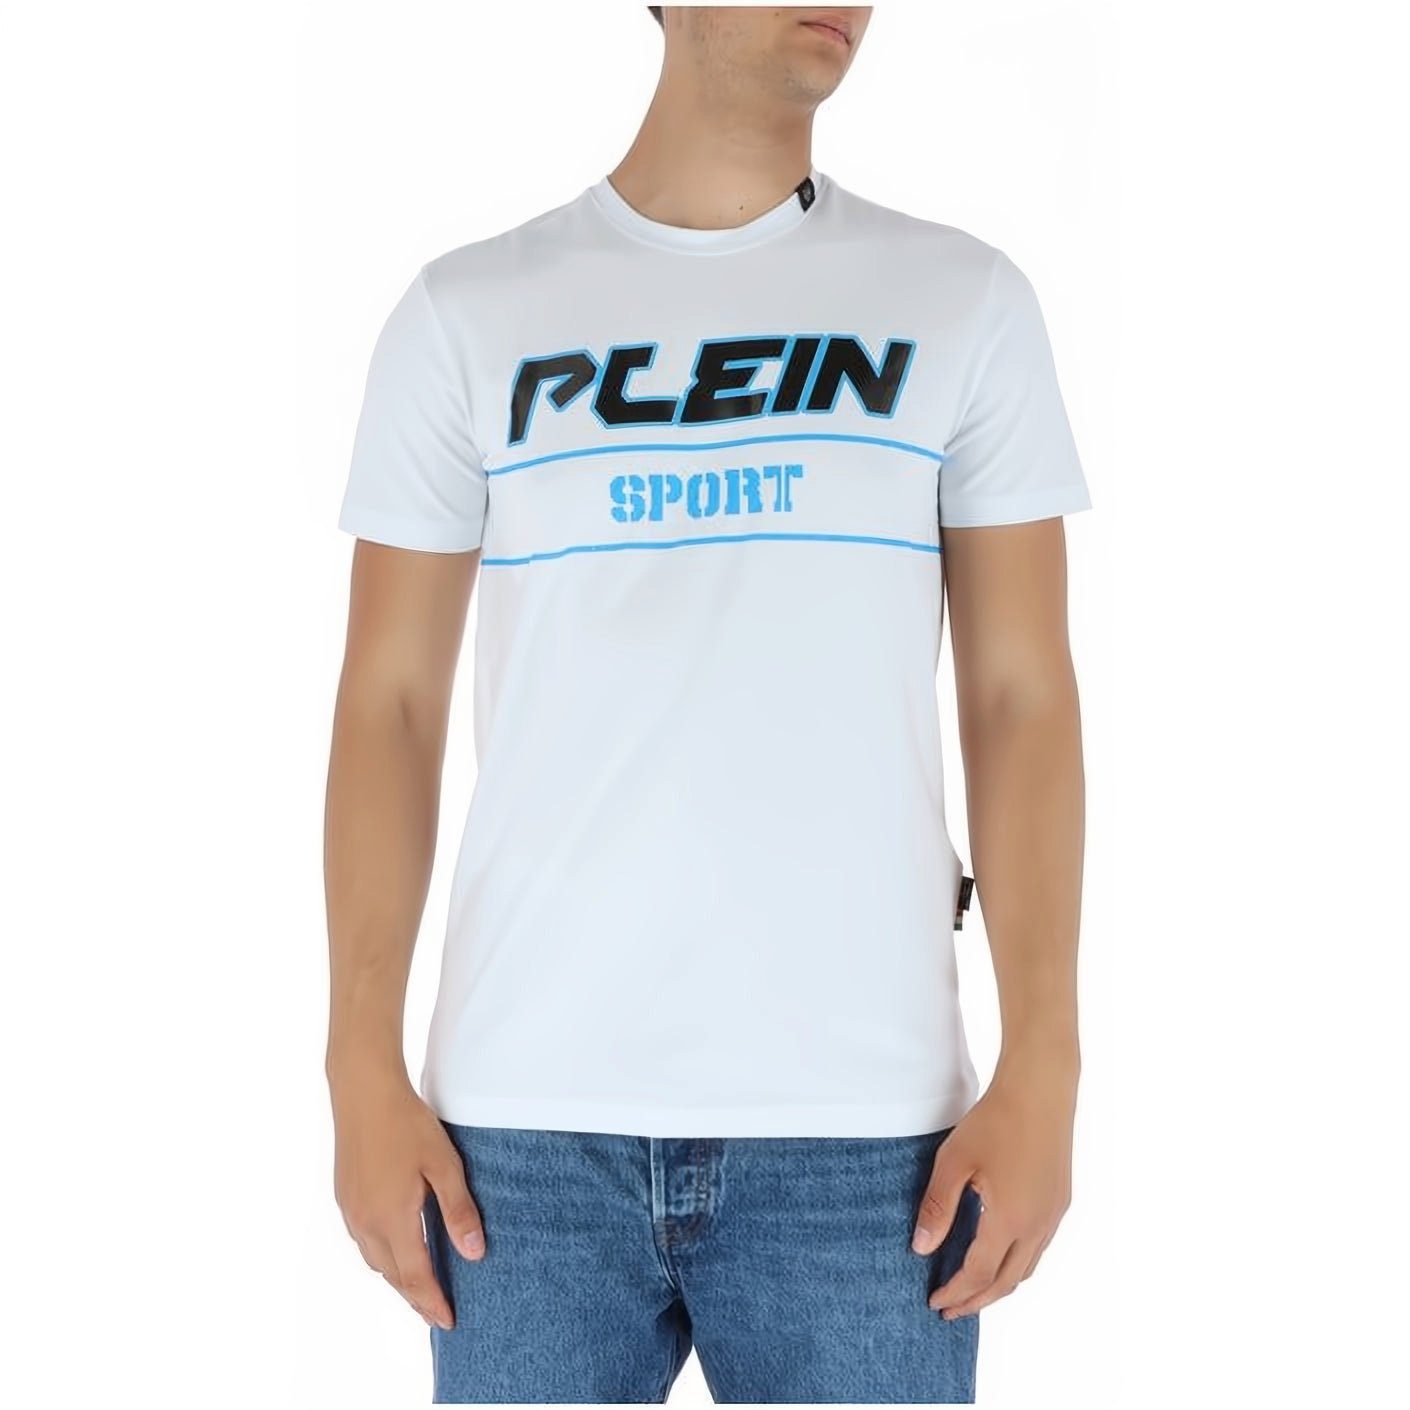 PLEIN SPORT T-Shirt ROUND NECK Stylischer Look, hoher Tragekomfort, vielfältige Farbauswahl